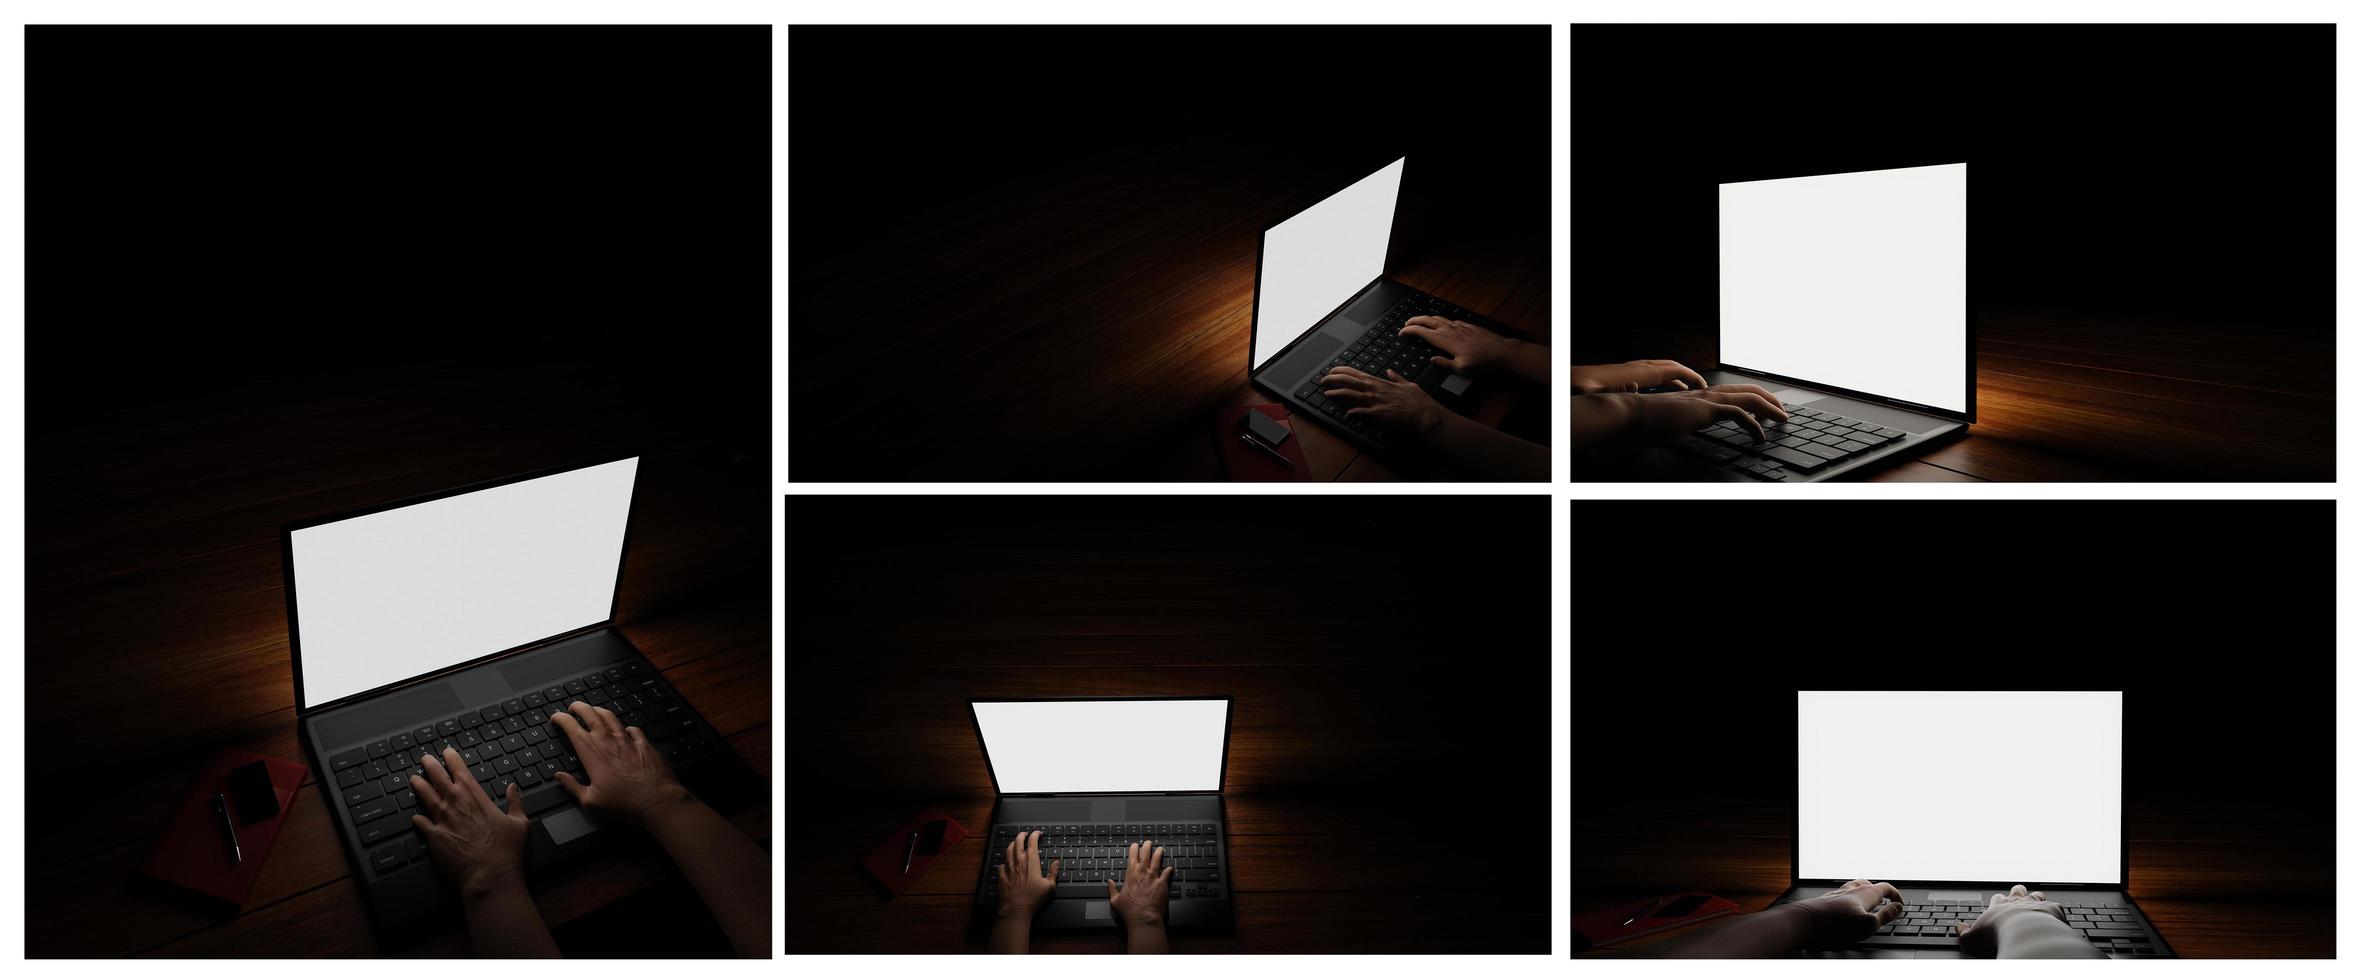 Die Hand einer Person, die ein Notebook oder einen Laptop benutzt, ein leerer Bildschirm, weißer, dunkler Hintergrund, Schwarzlicht scheint auf die Hand. Mystery-Operation oder hacker.3d-Rendering foto